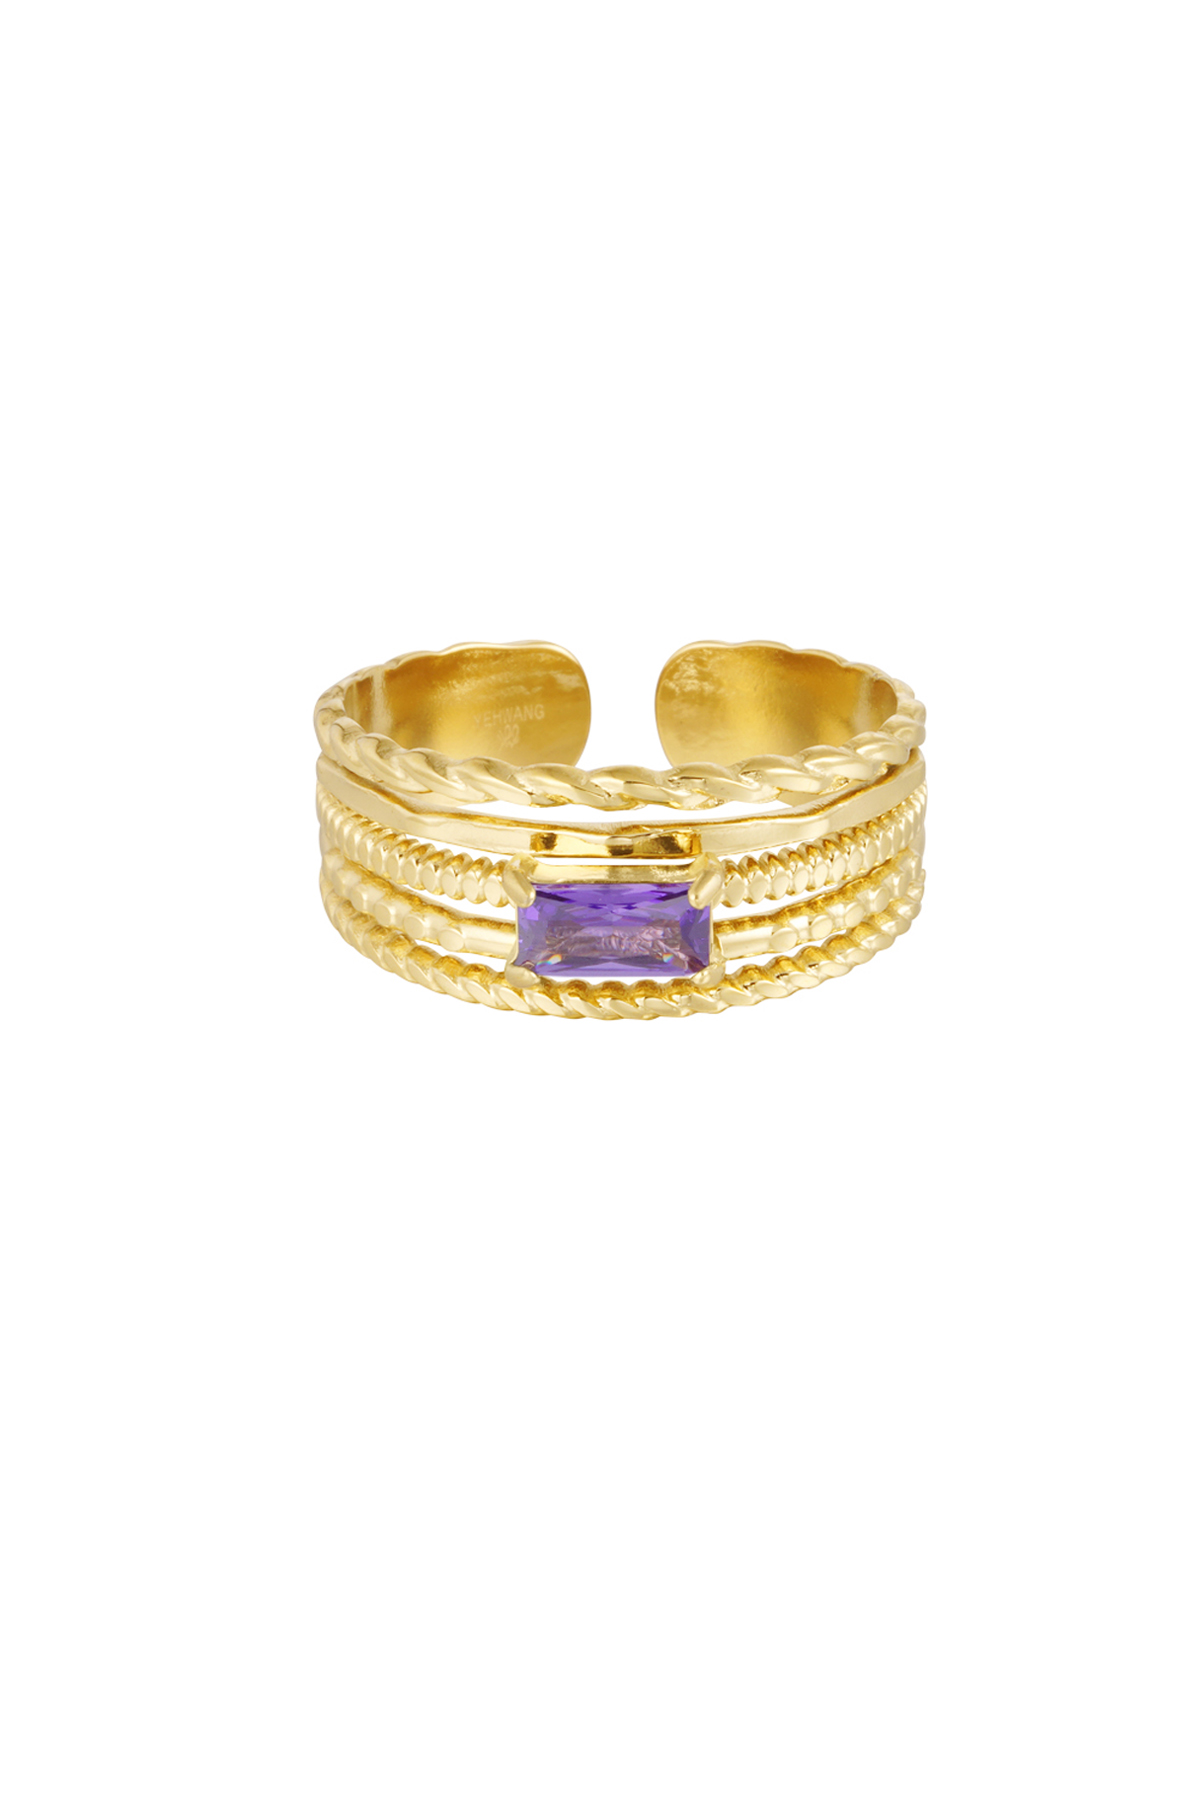 Detalle de anillo a capas de color - violeta